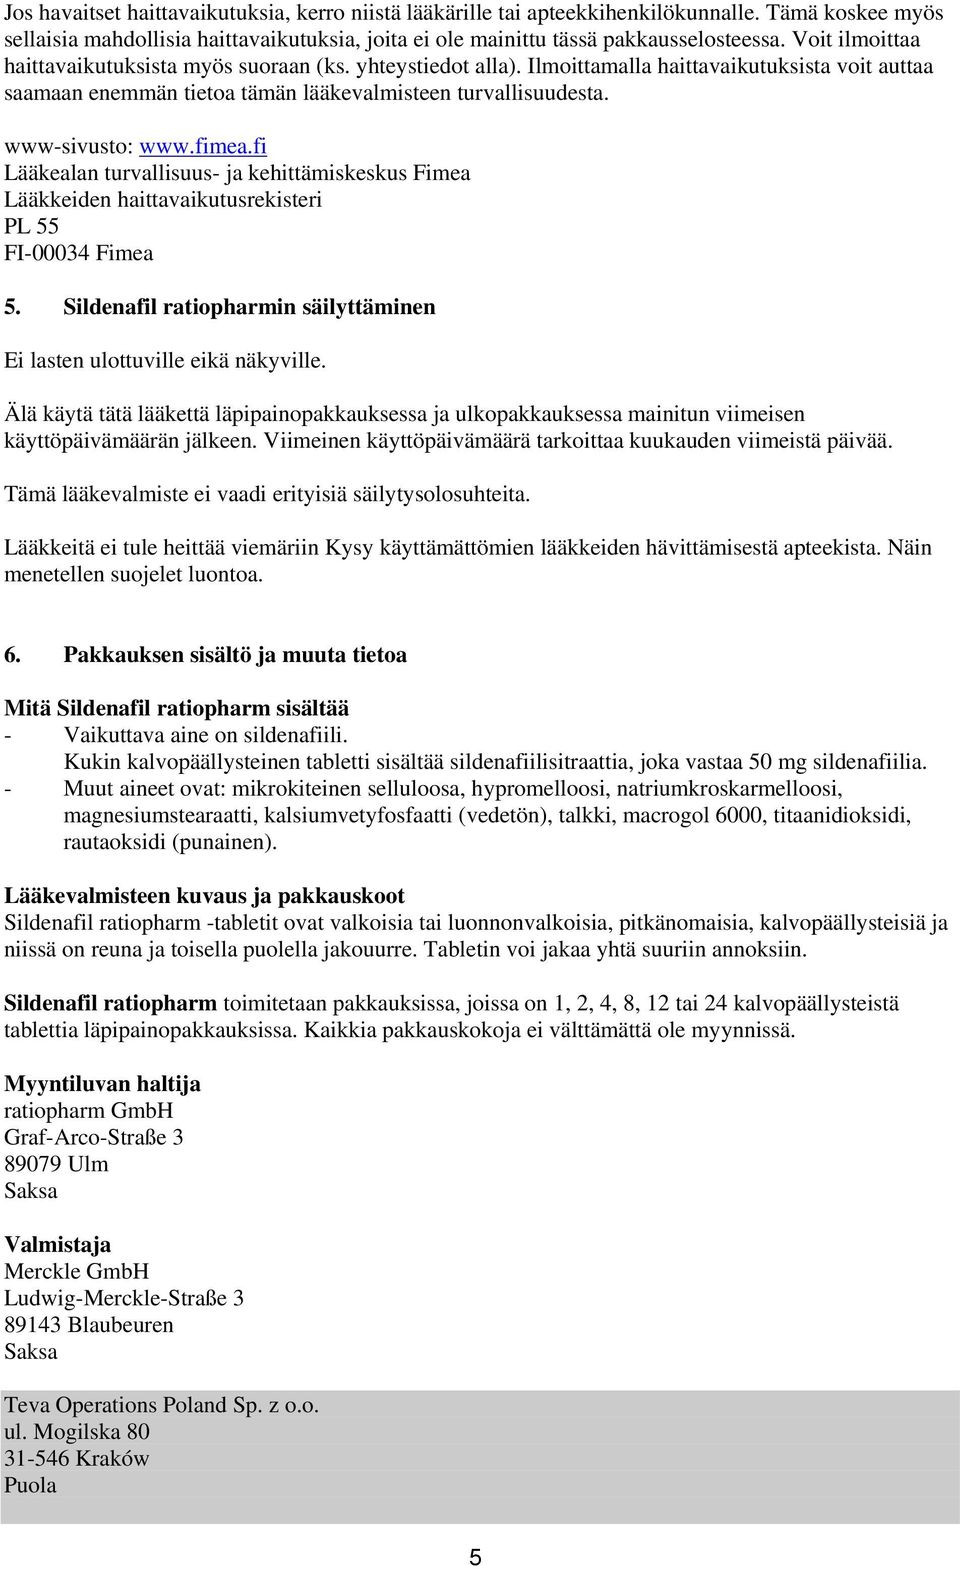 fimea.fi Lääkealan turvallisuus- ja kehittämiskeskus Fimea Lääkkeiden haittavaikutusrekisteri PL 55 FI-00034 Fimea 5. Sildenafil ratiopharmin säilyttäminen Ei lasten ulottuville eikä näkyville.